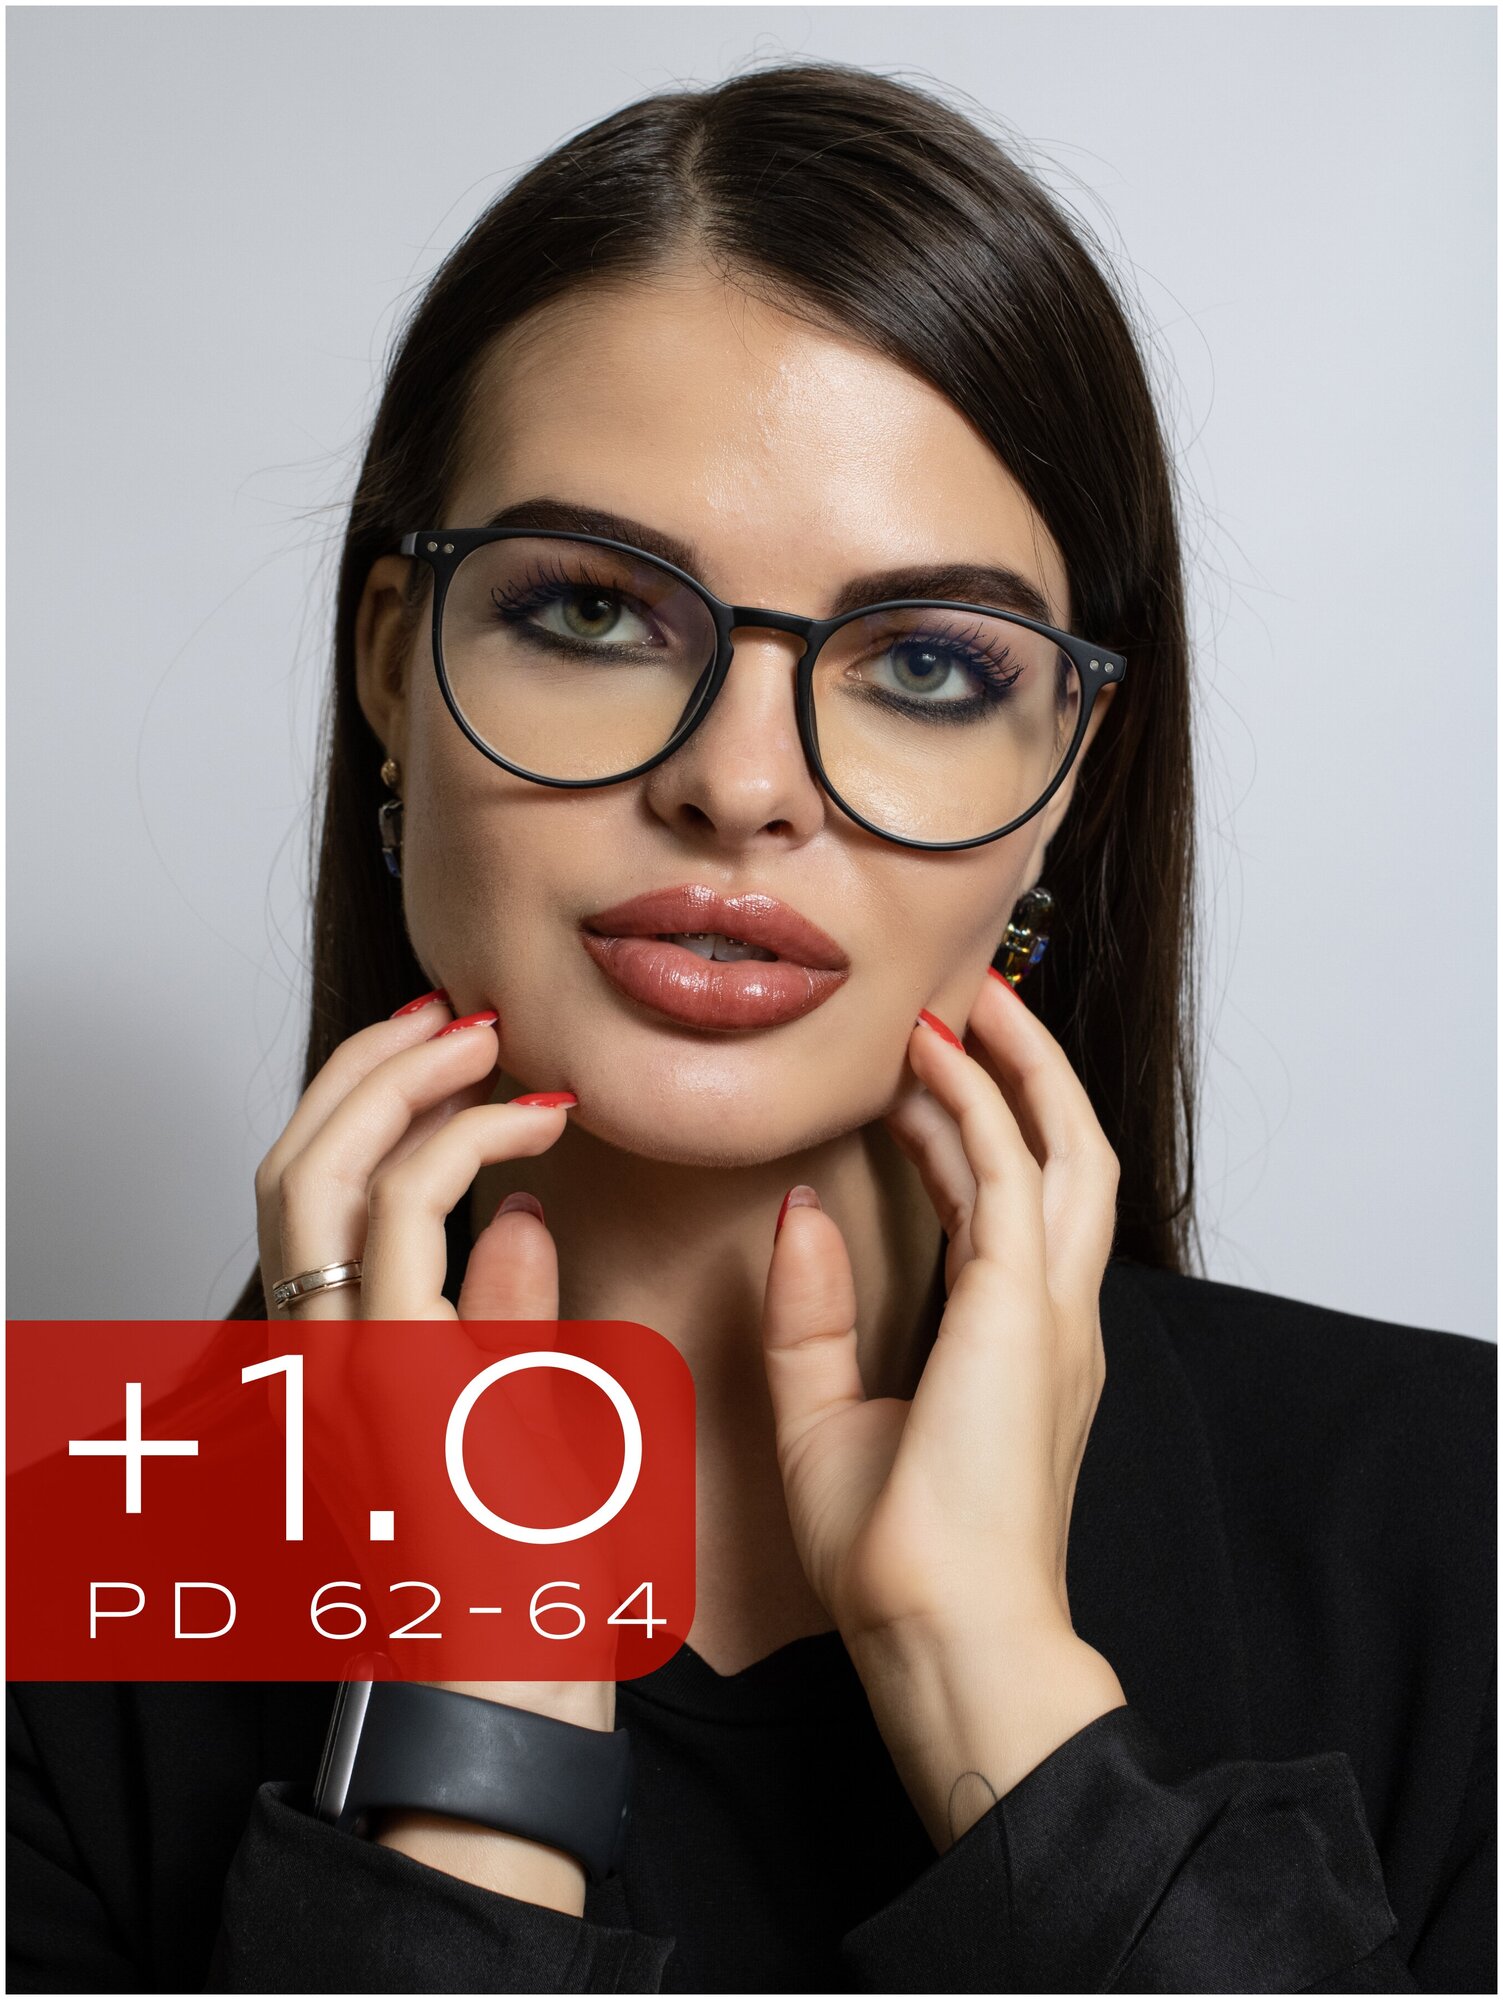 Очки для зрения женские +1 / Корригирующие очки +1.0 / Очки с диоптрией +1,0 / Очки для чтения плюс 1